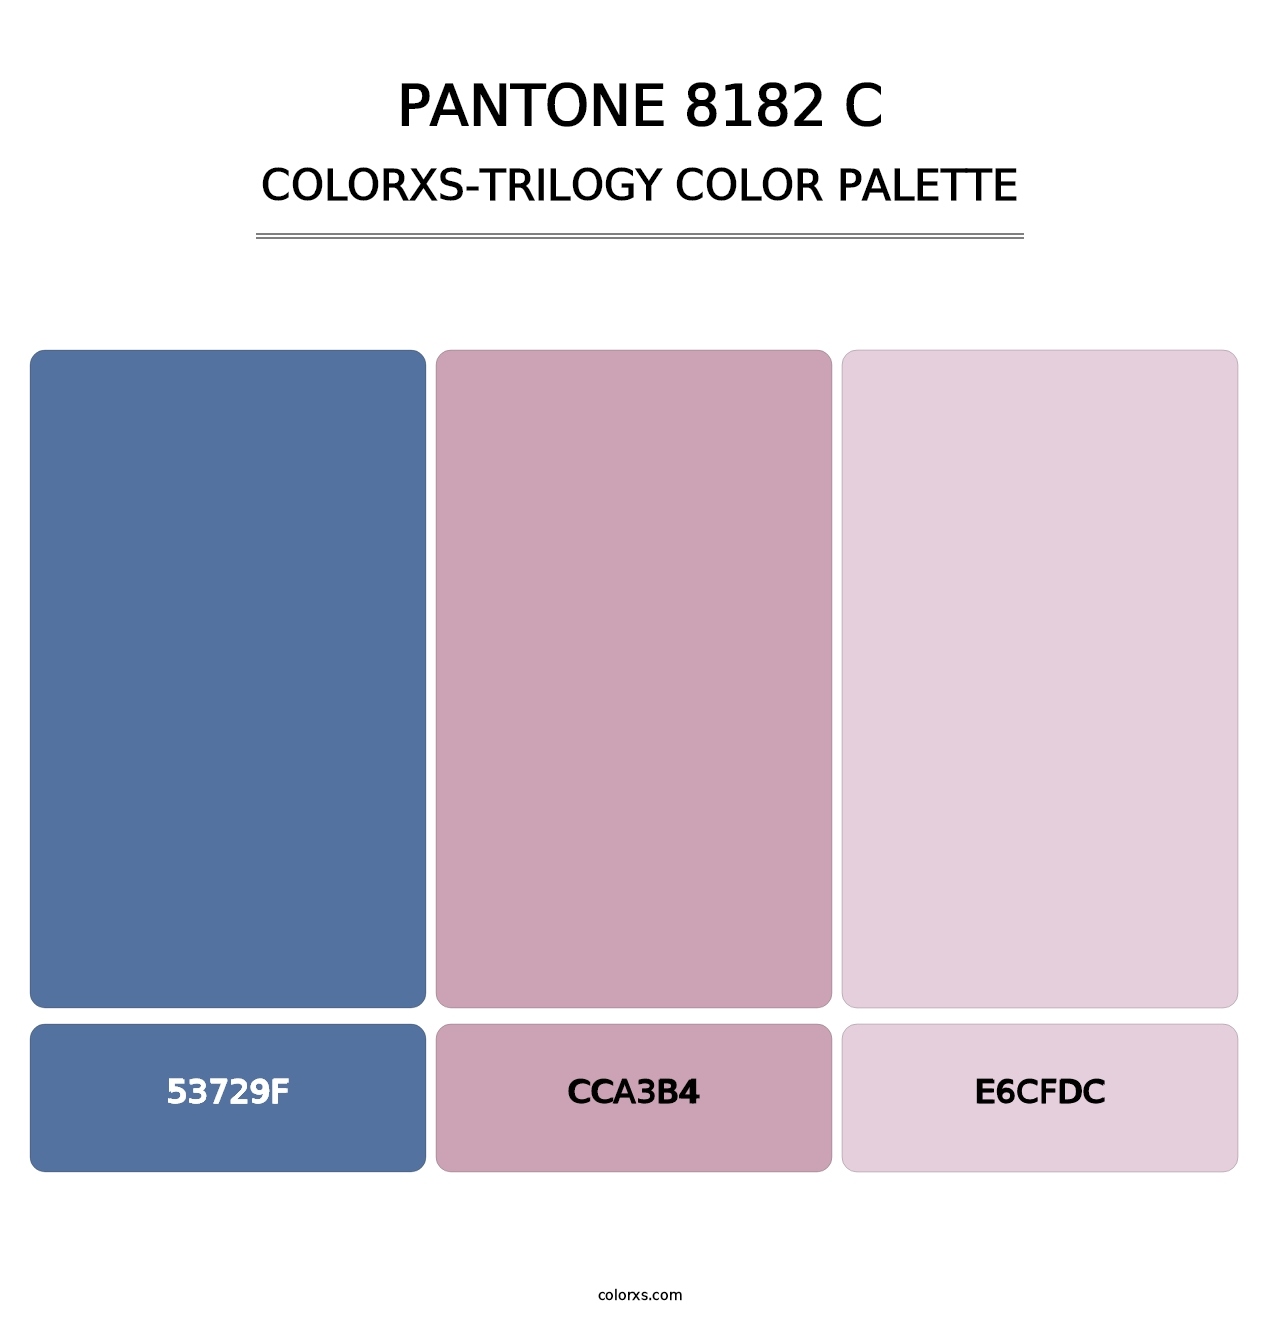 PANTONE 8182 C - Colorxs Trilogy Palette